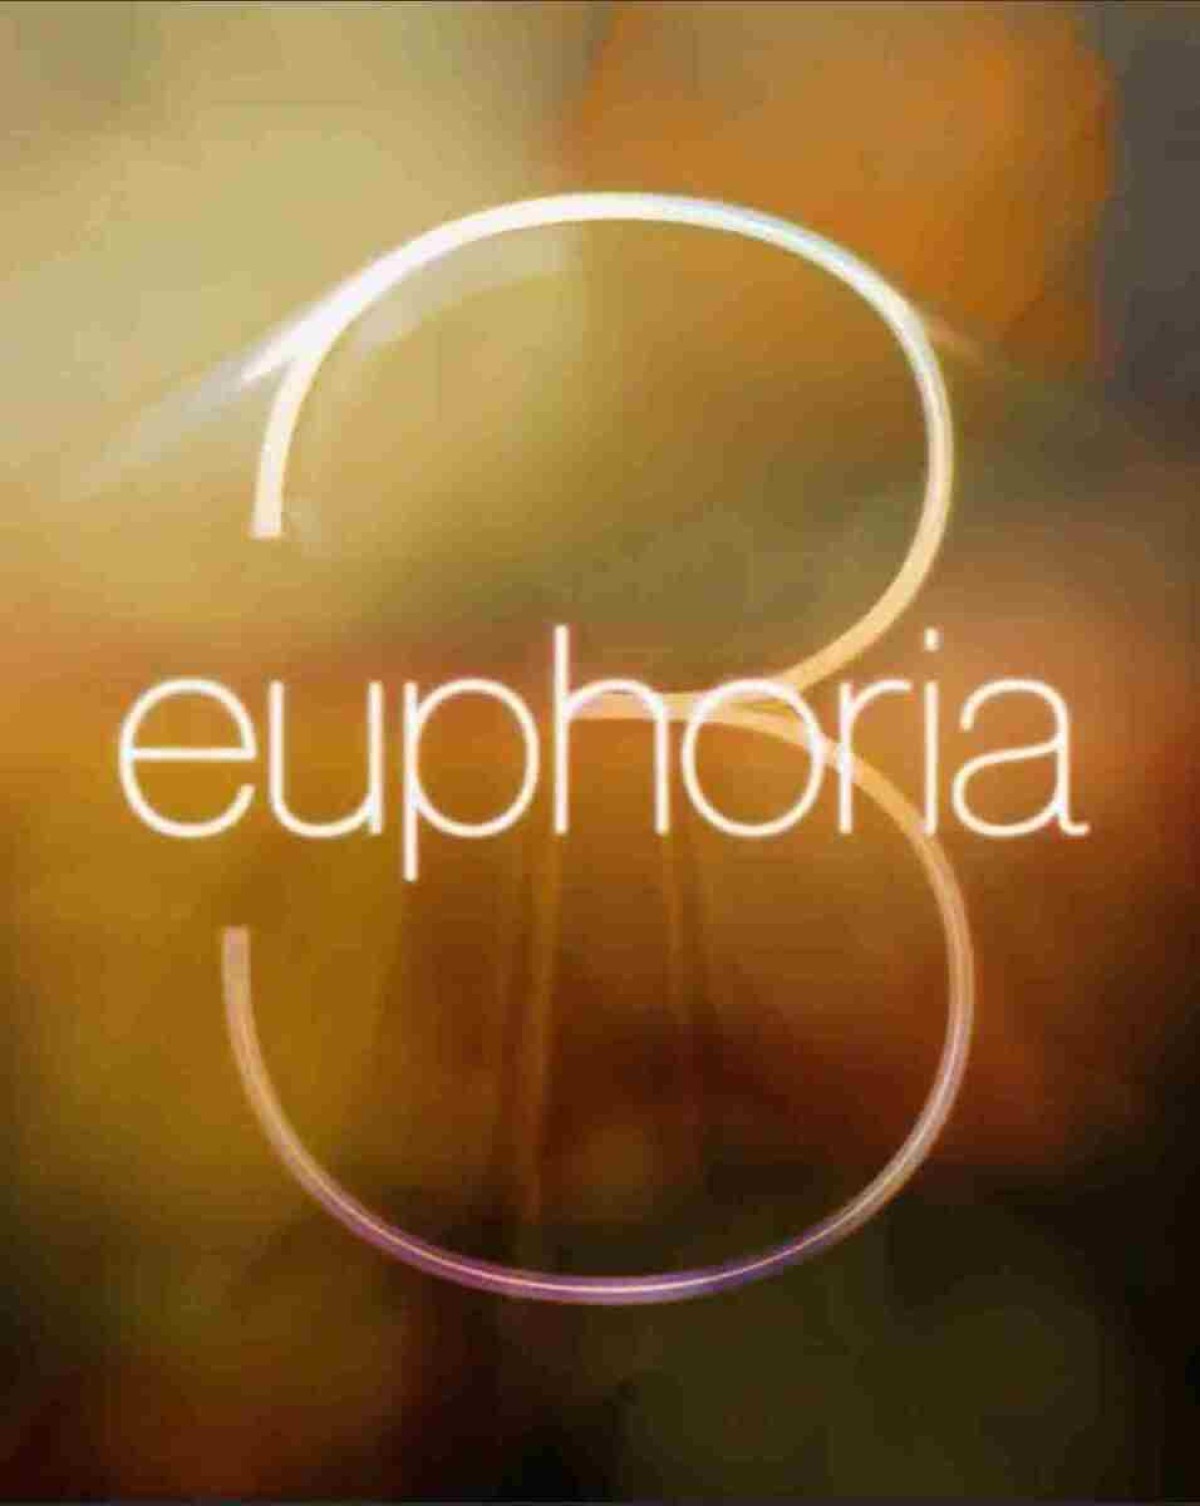 Sydney Sweeney confirma que voltará para nova temporada de Euphoria